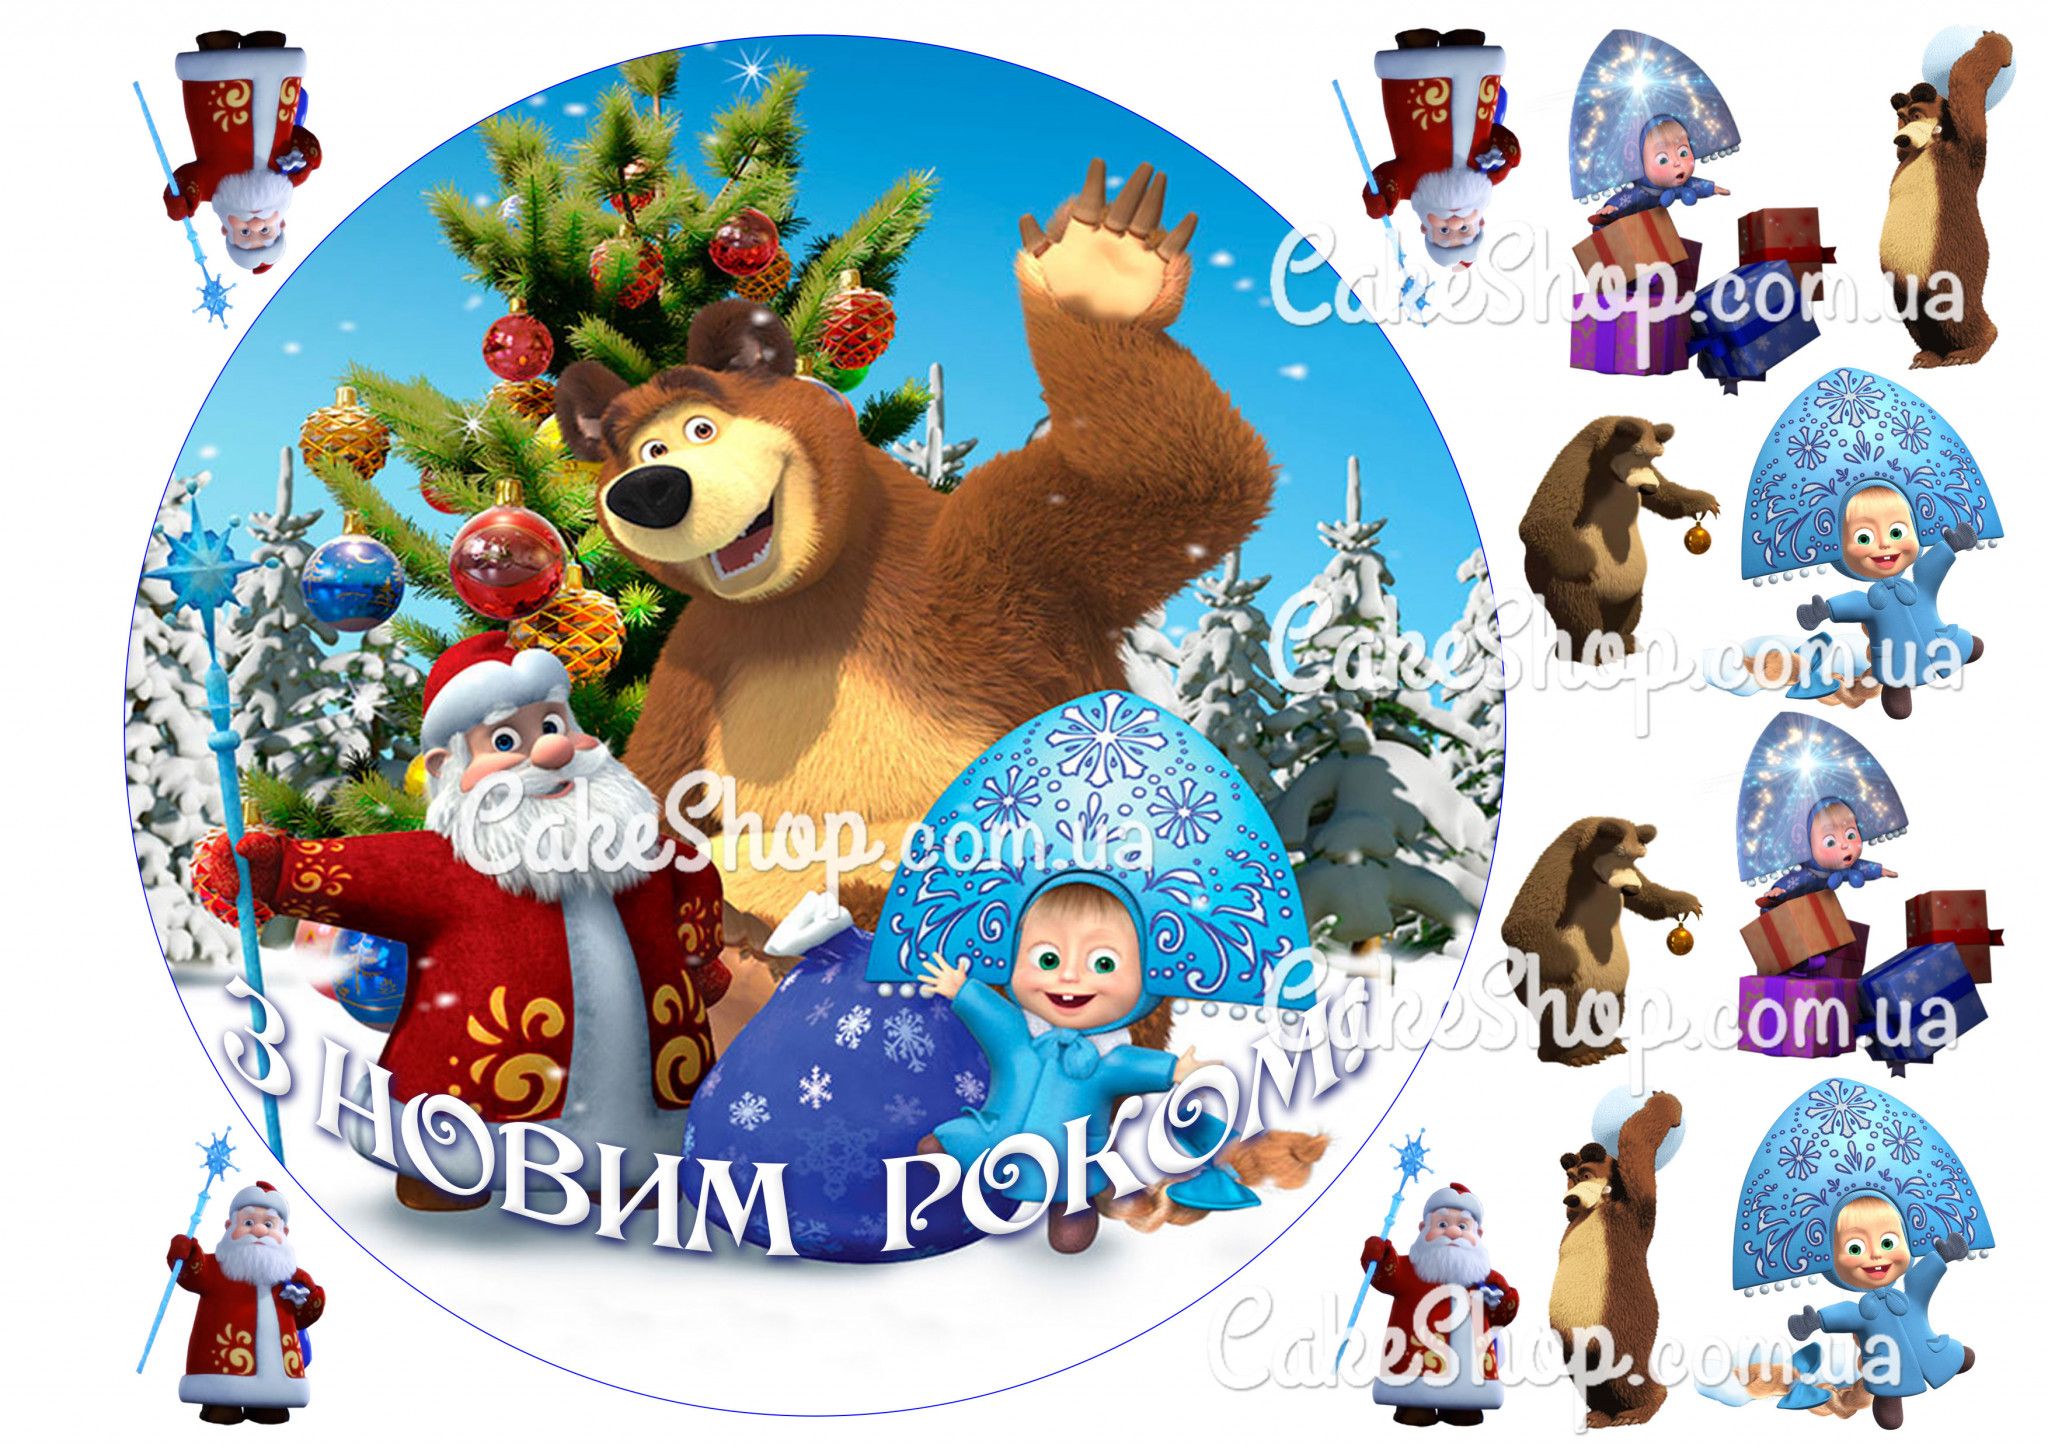 ⋗ Вафельная картинка Маша и Медведь 7 купить в Украине ➛ CakeShop.com.ua, фото